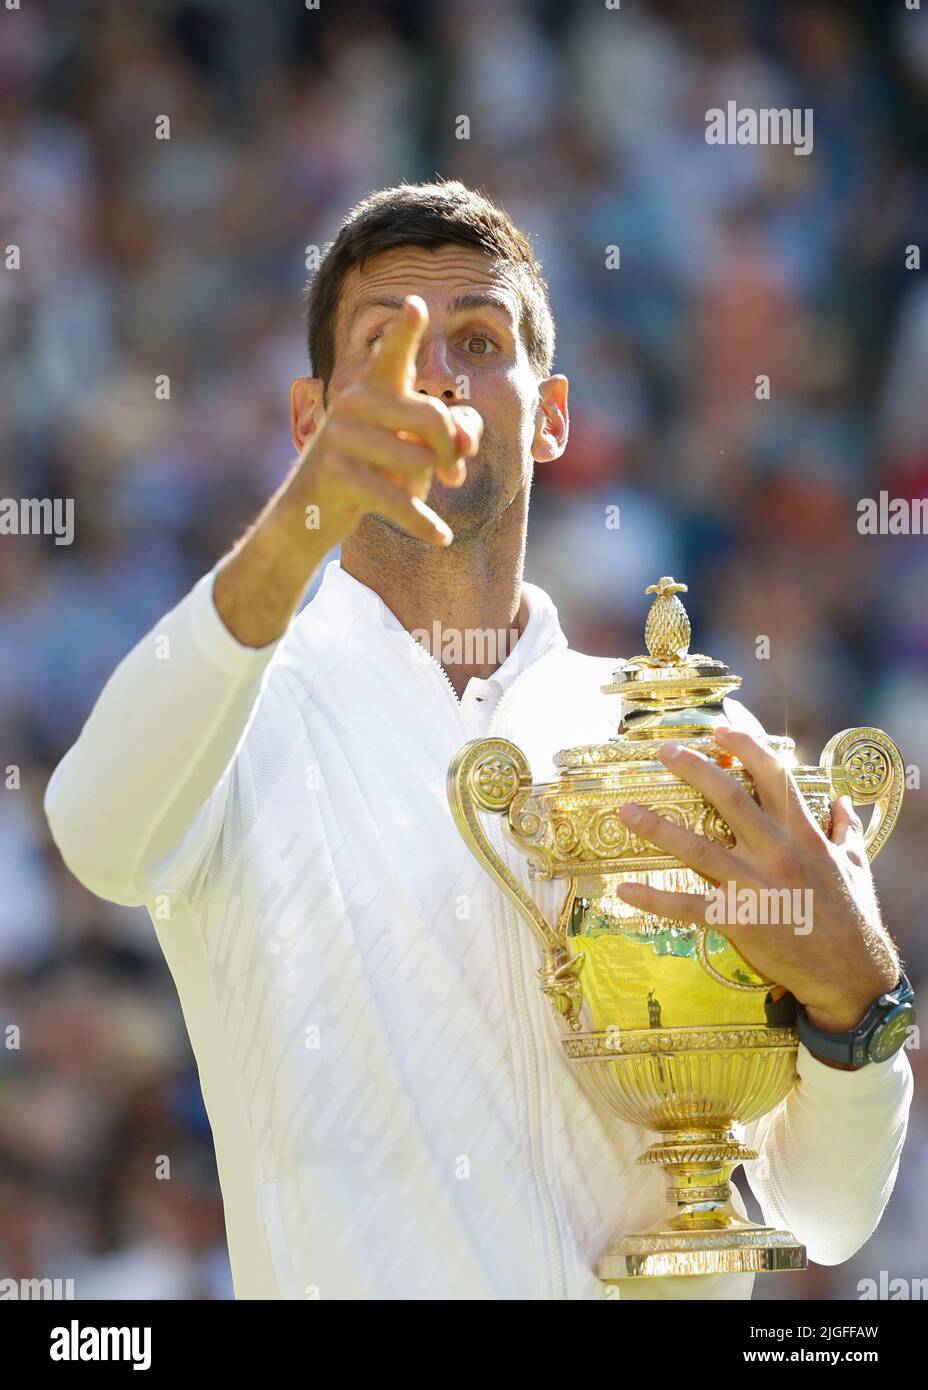 Wimbledon, Grande-Bretagne 10th. Juillet 2022. Champion Novak Djokovic avec le trophée lors de la présentation aux Championnats de Wimbledon 2022 le dimanche 10 juillet 2022., © Juergen Hasenkopf / Alamy Live News Banque D'Images